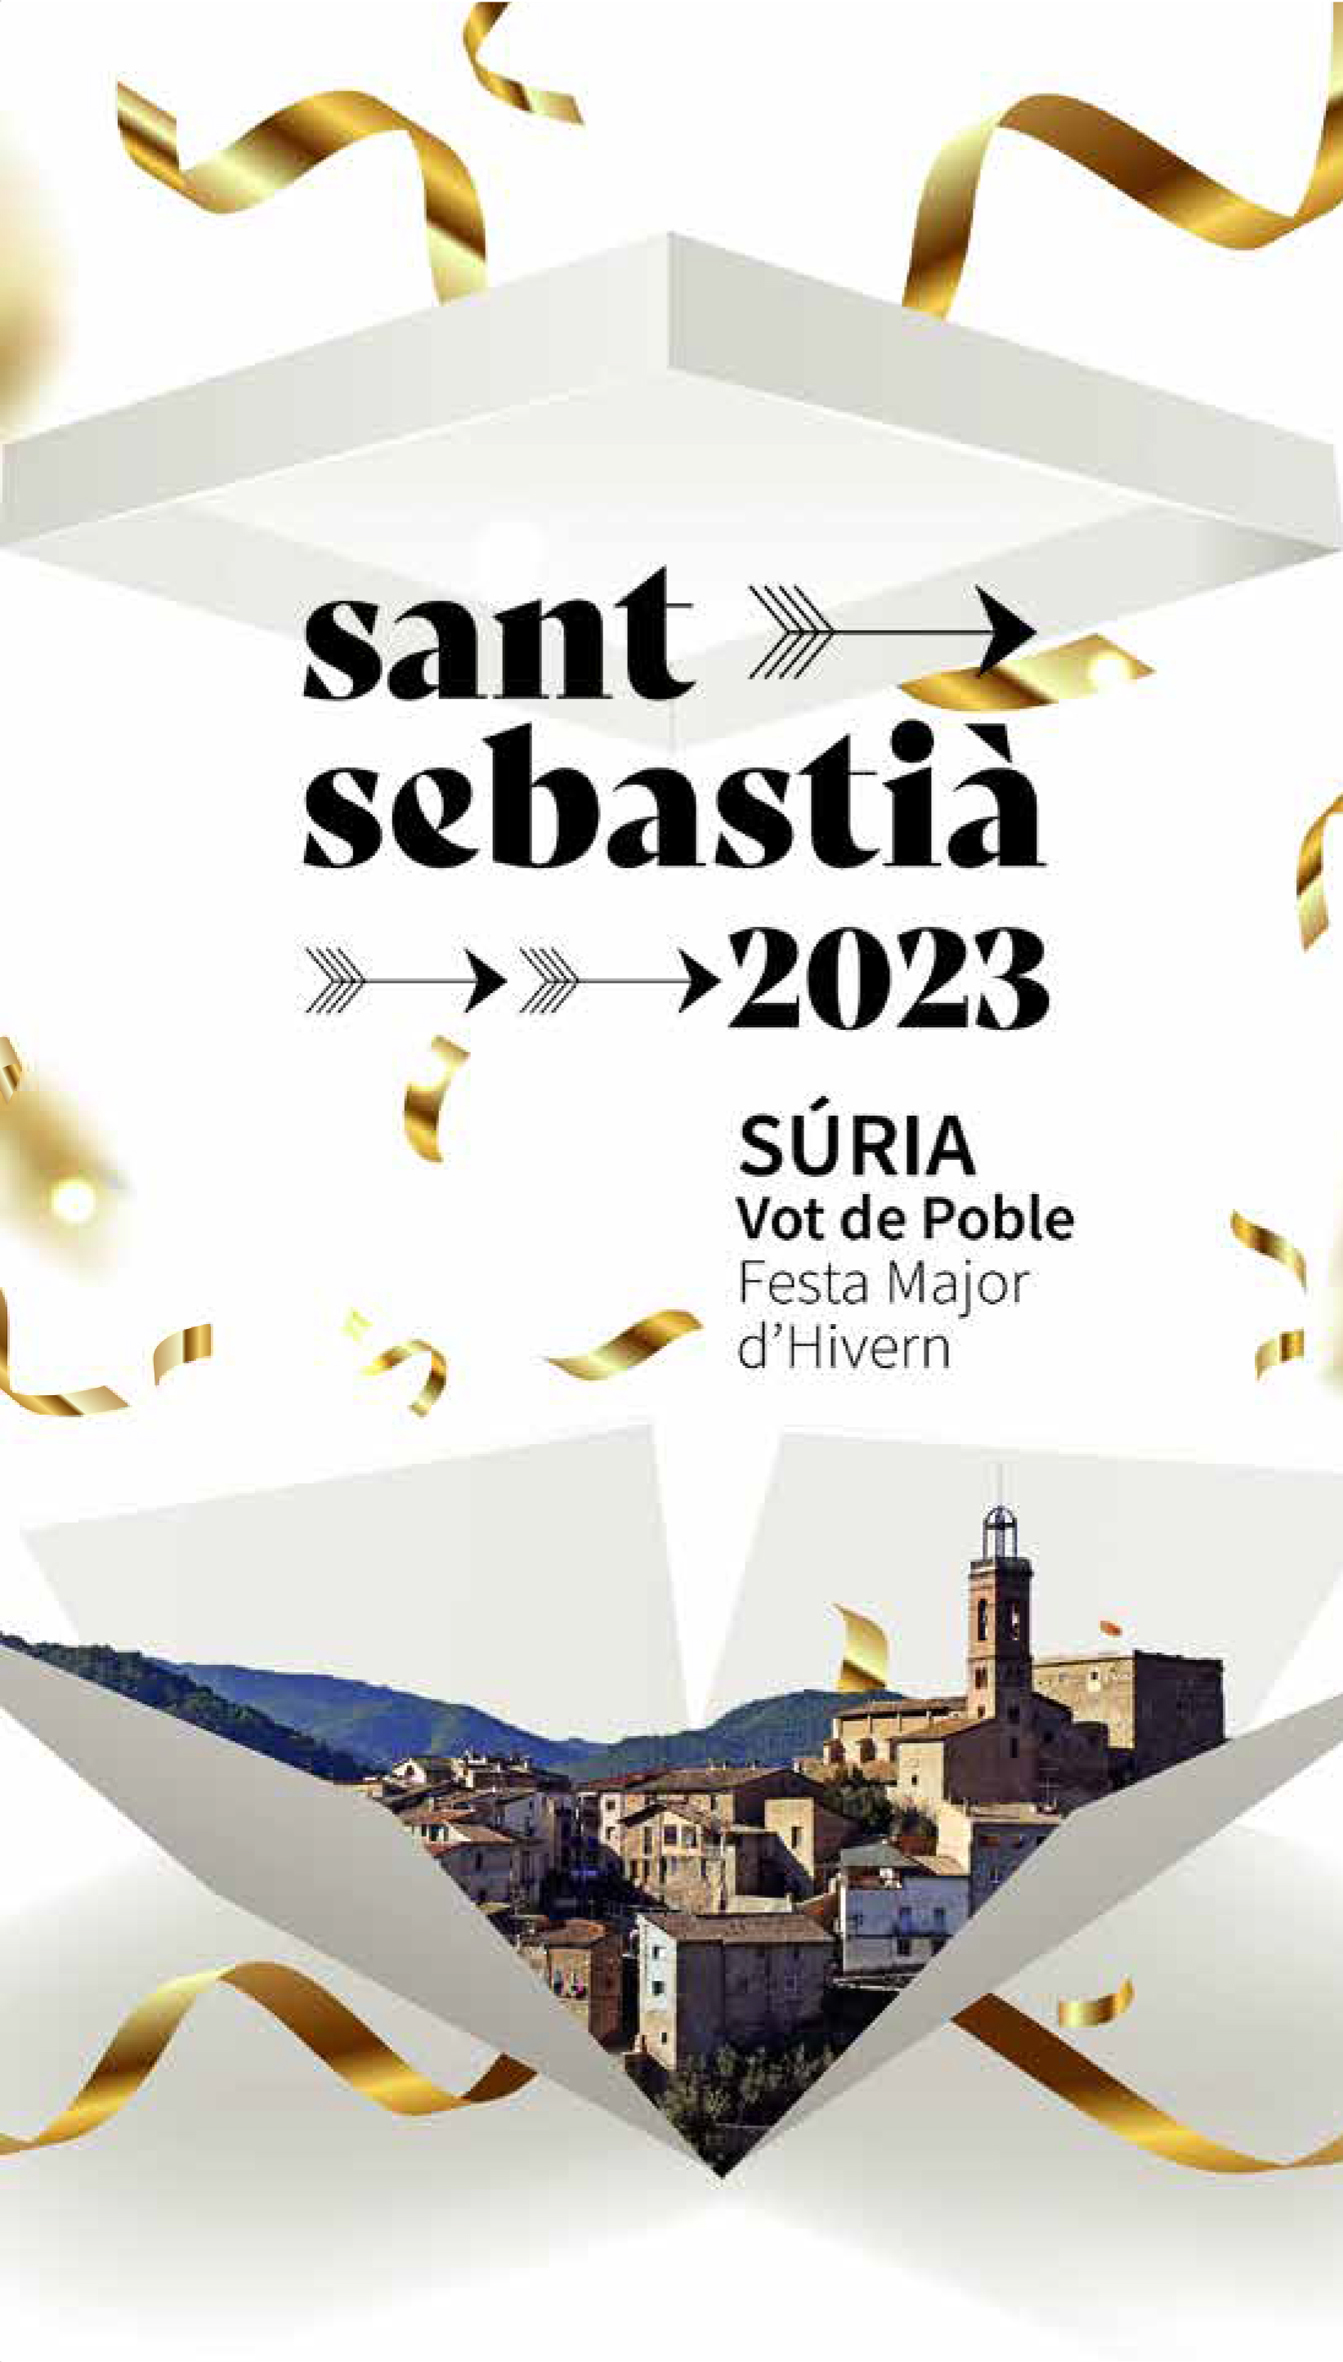 Portada del programa de la Festa de Sant Sebastià 2023.